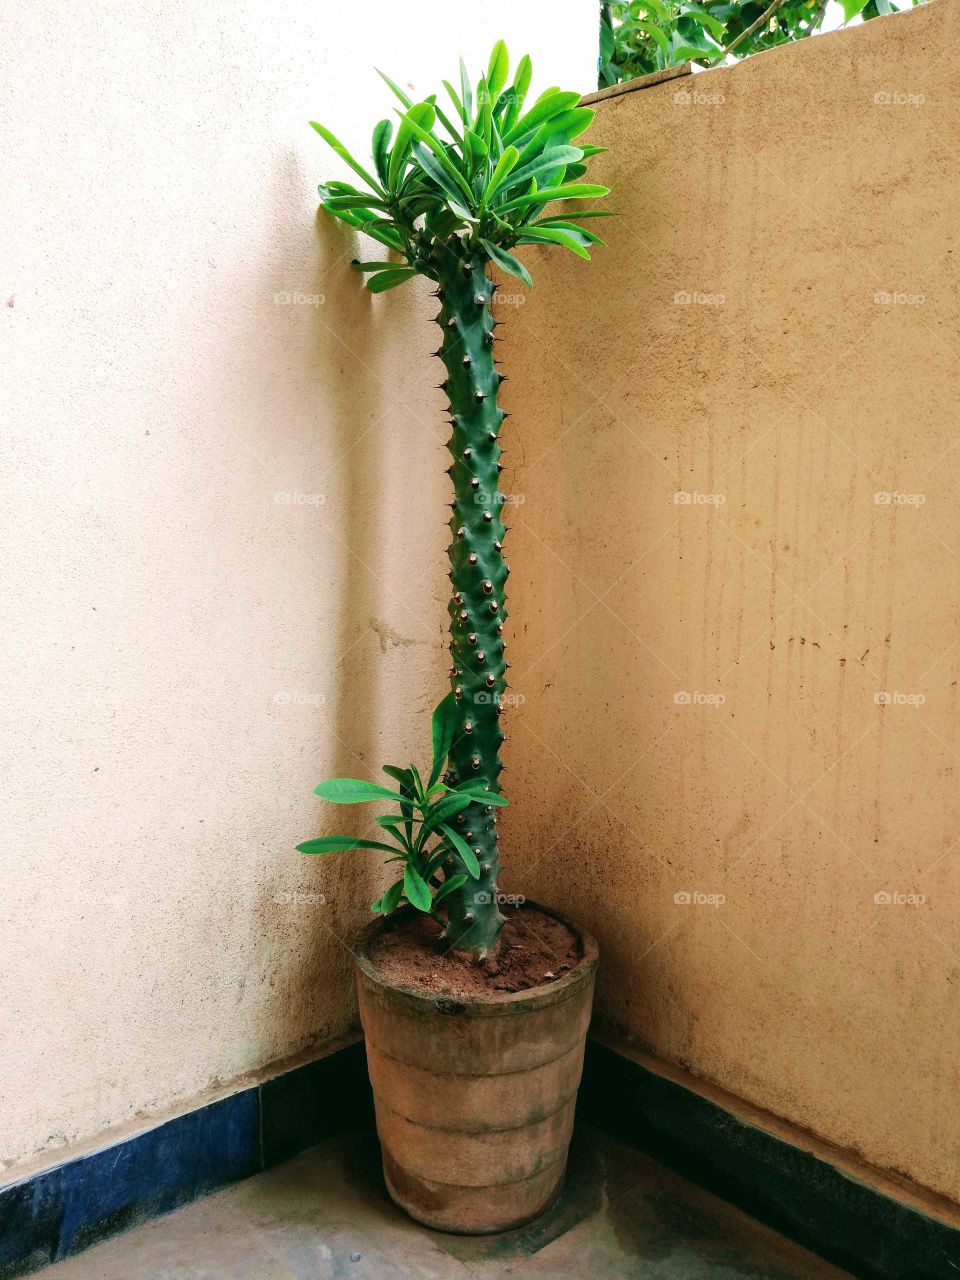 cactus in the pot